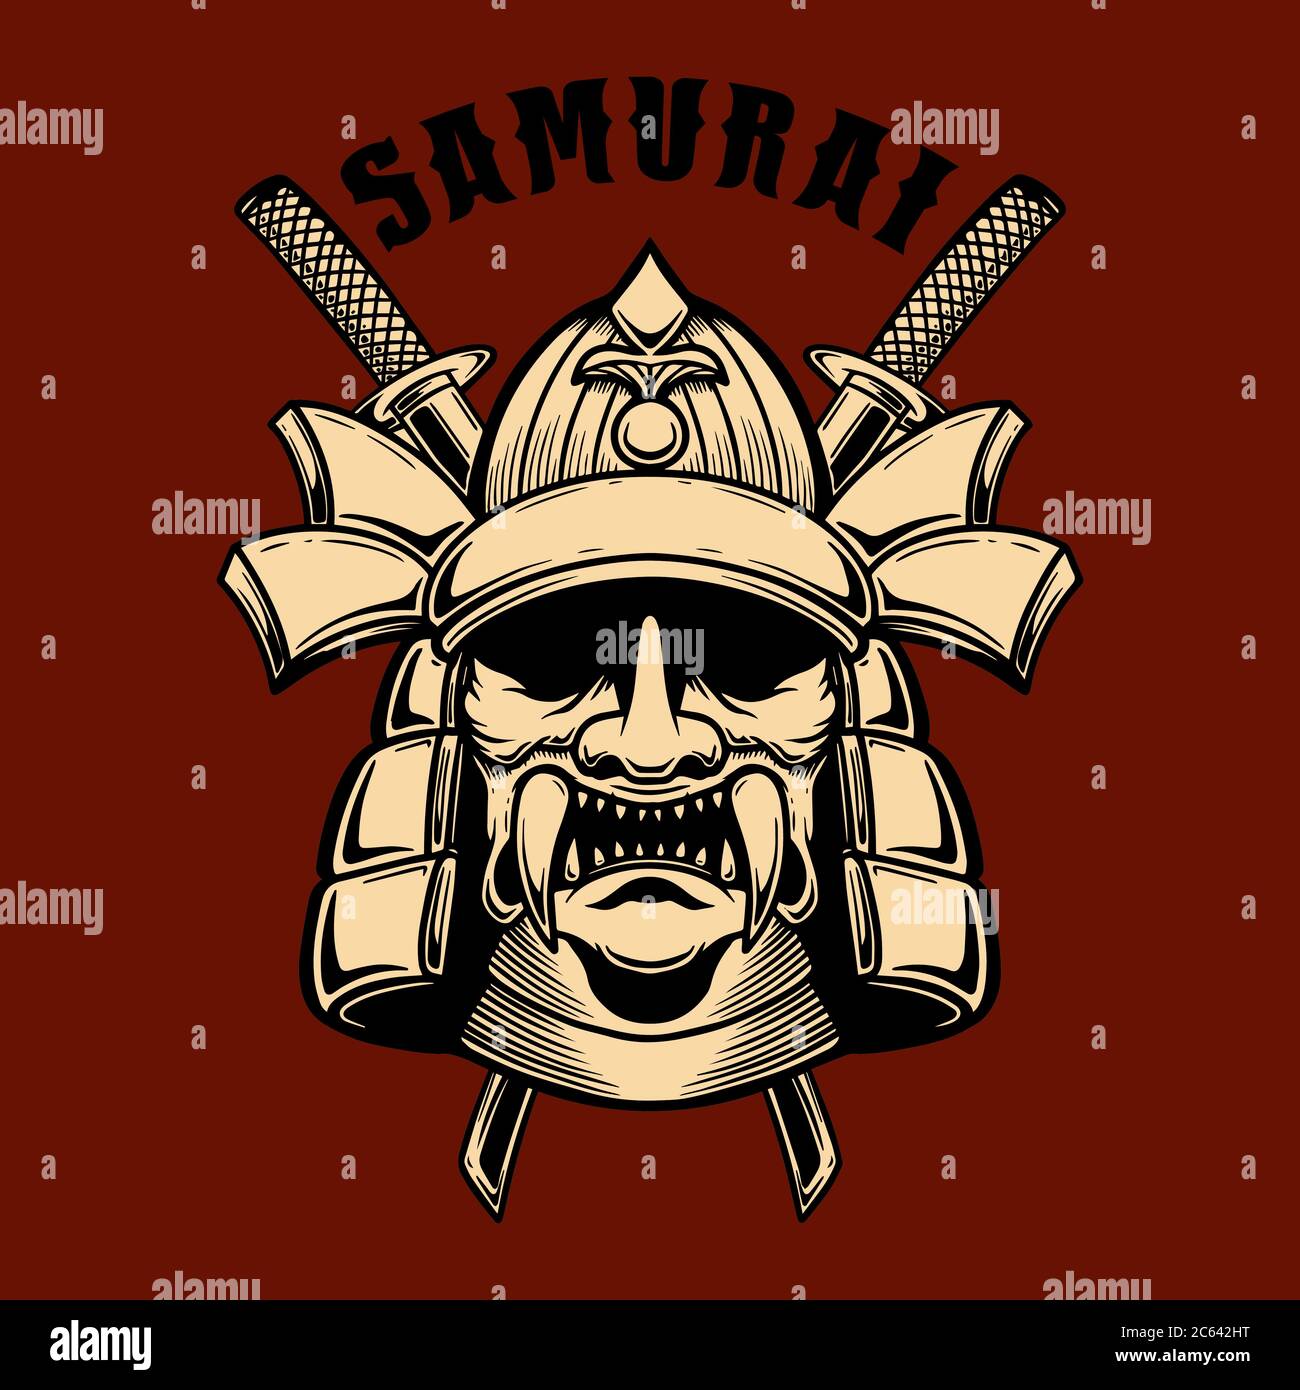 Illustration of japan samurai warrior. Design element for poster, card, banner, sign, emblem. Vector illustration Stock Vector